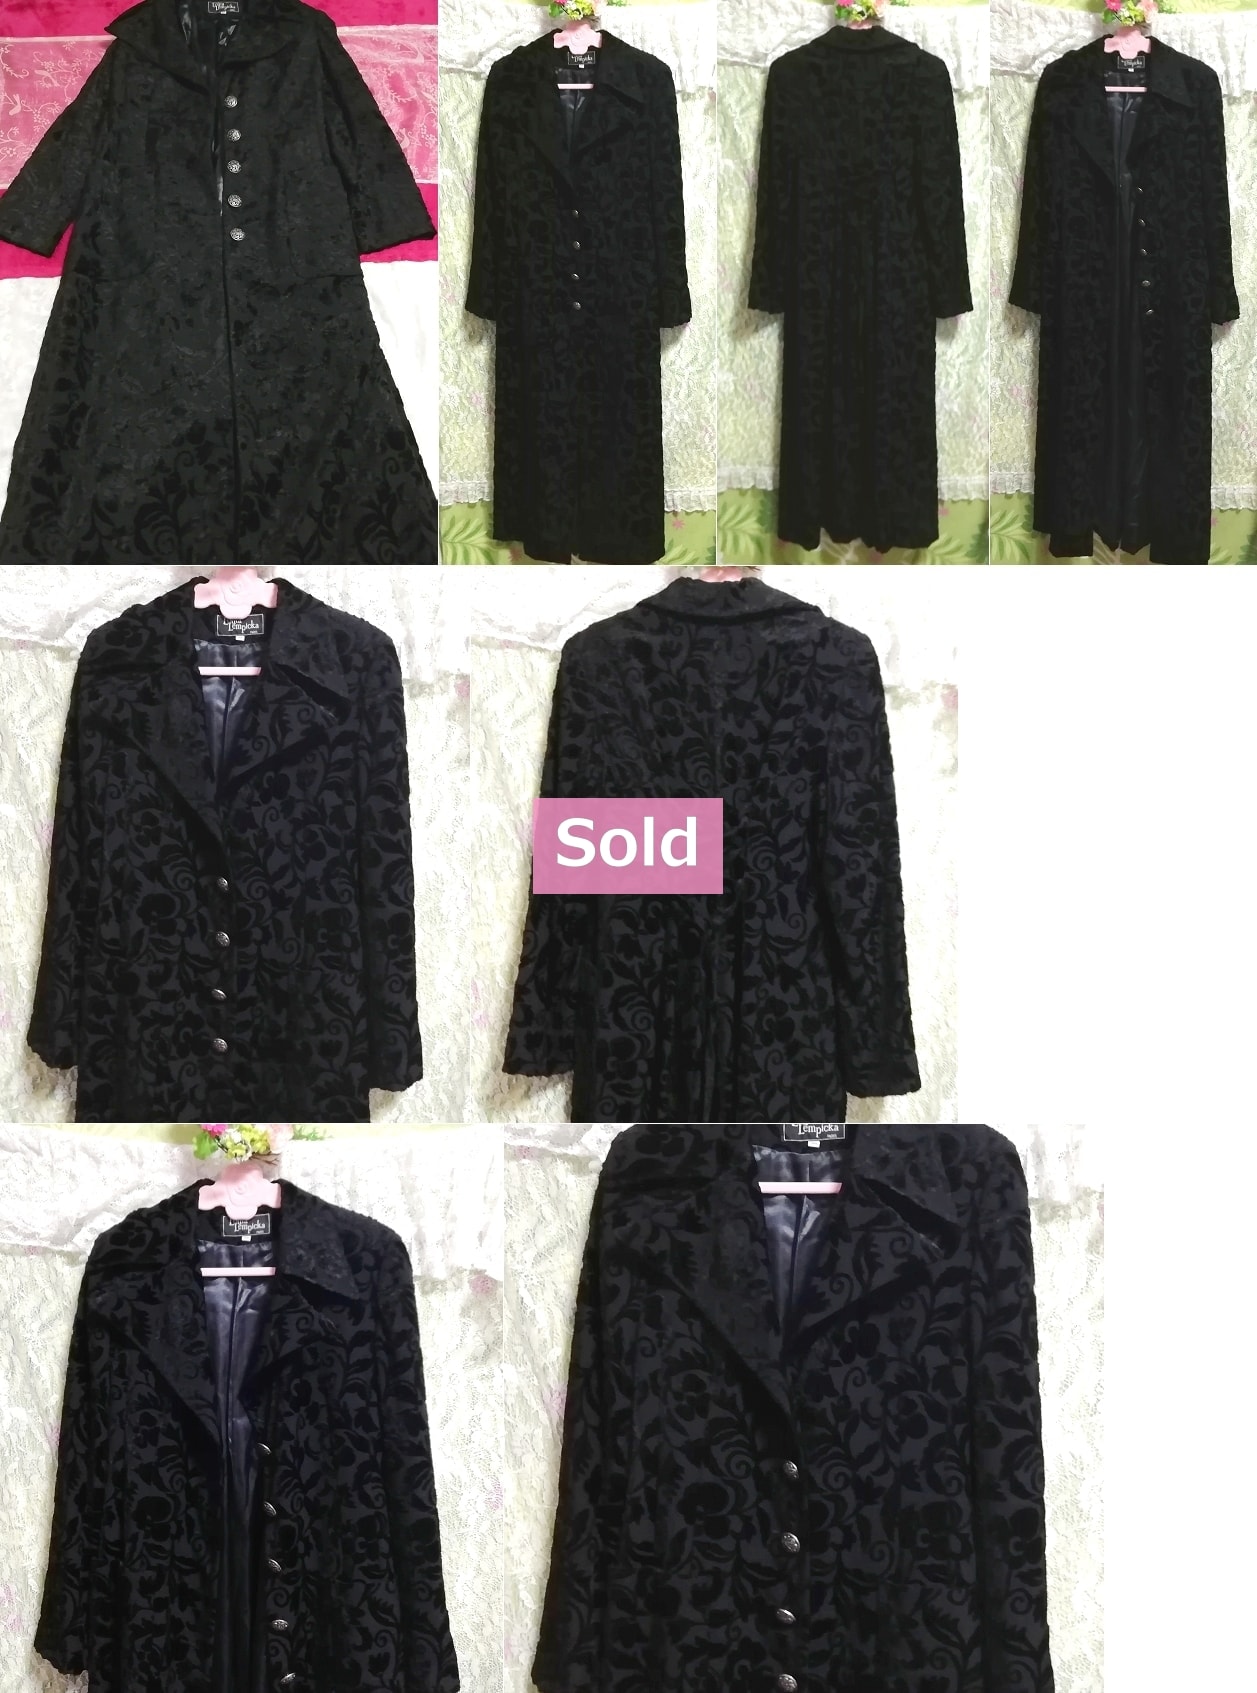 Gabardina larga con bordado de flores negras / chaqueta / chaqueta / chaqueta / gabardina larga con bordado de flores negras / chaqueta